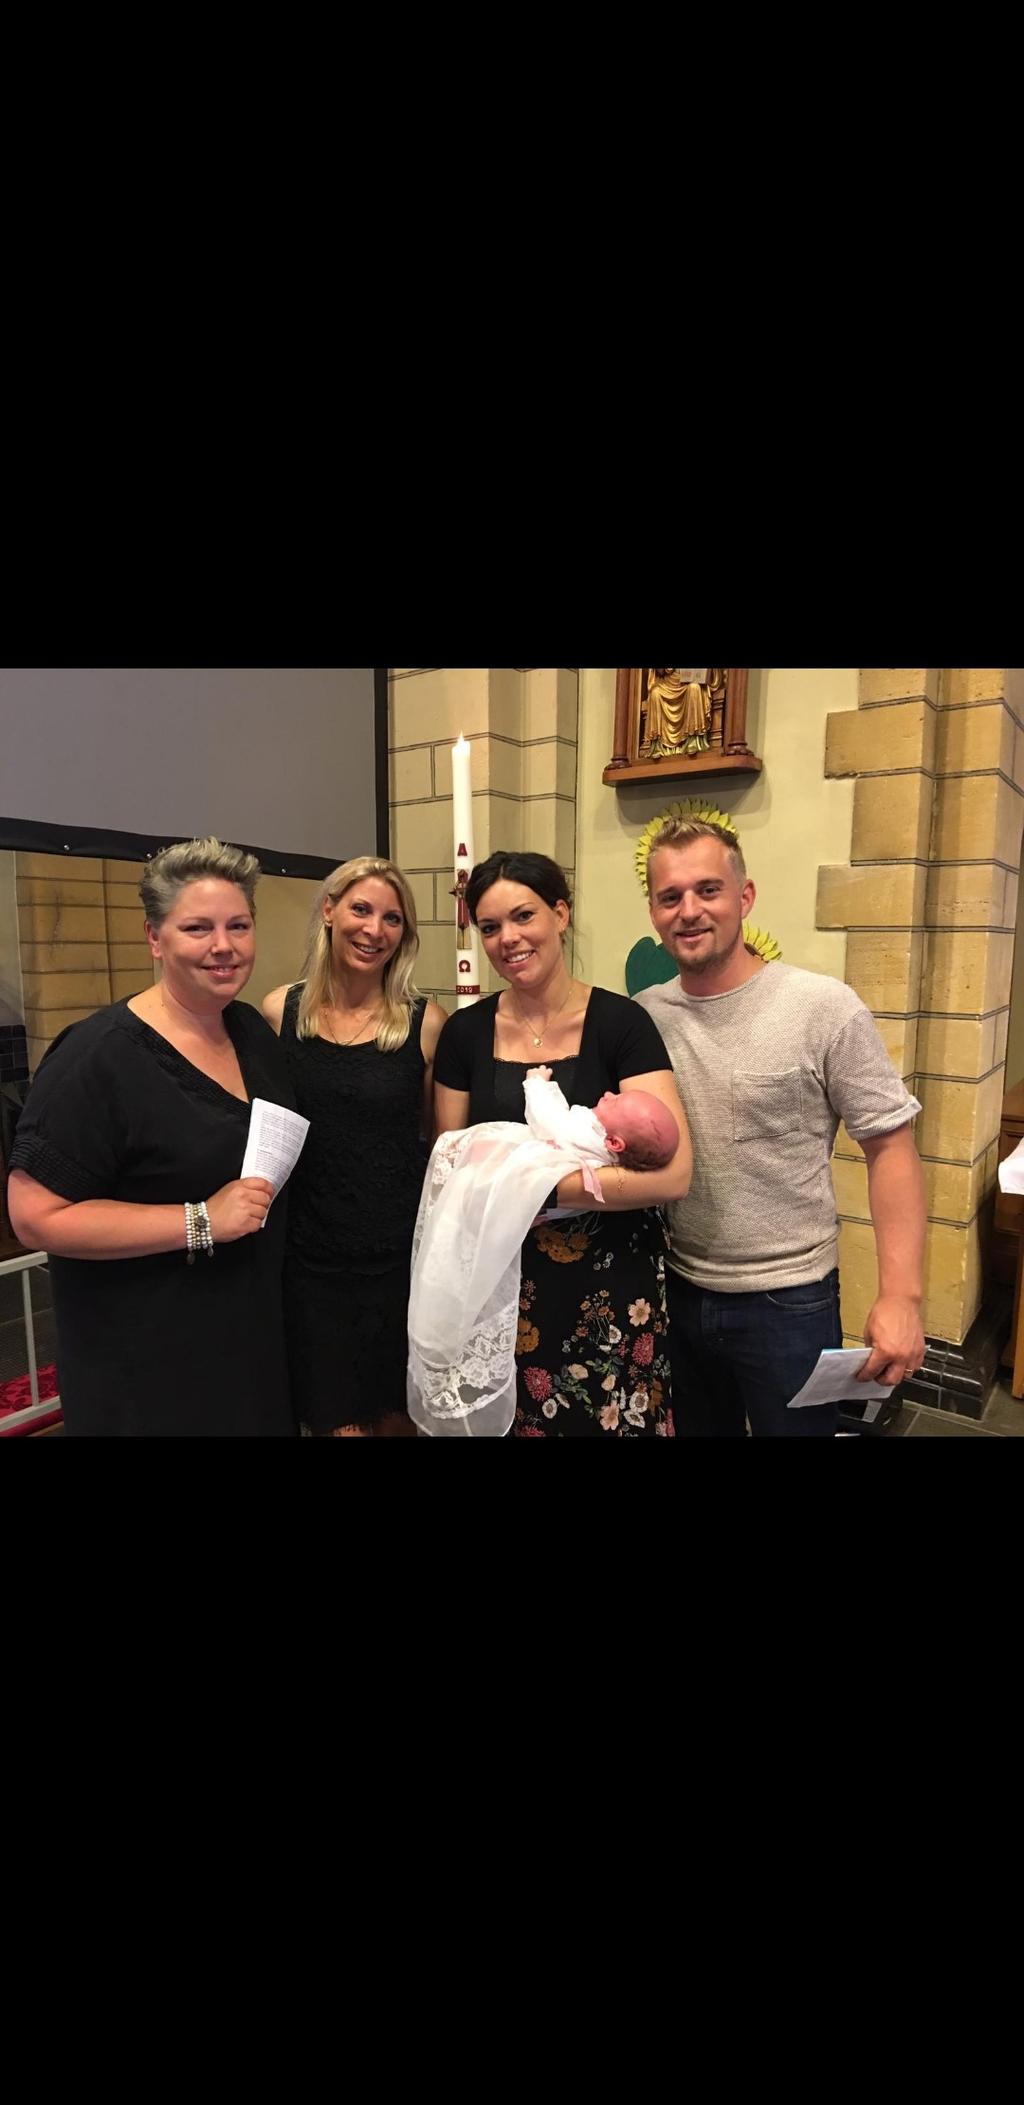 Parochieberichten Doopsel Op 6 juli werd Boris Joosten gedoopt. Boris werd geboren op 3 juni 2019. Hij is een zoon van Stefan en Emmy Joosten-Keulen. Zij wonen in de Jhr.